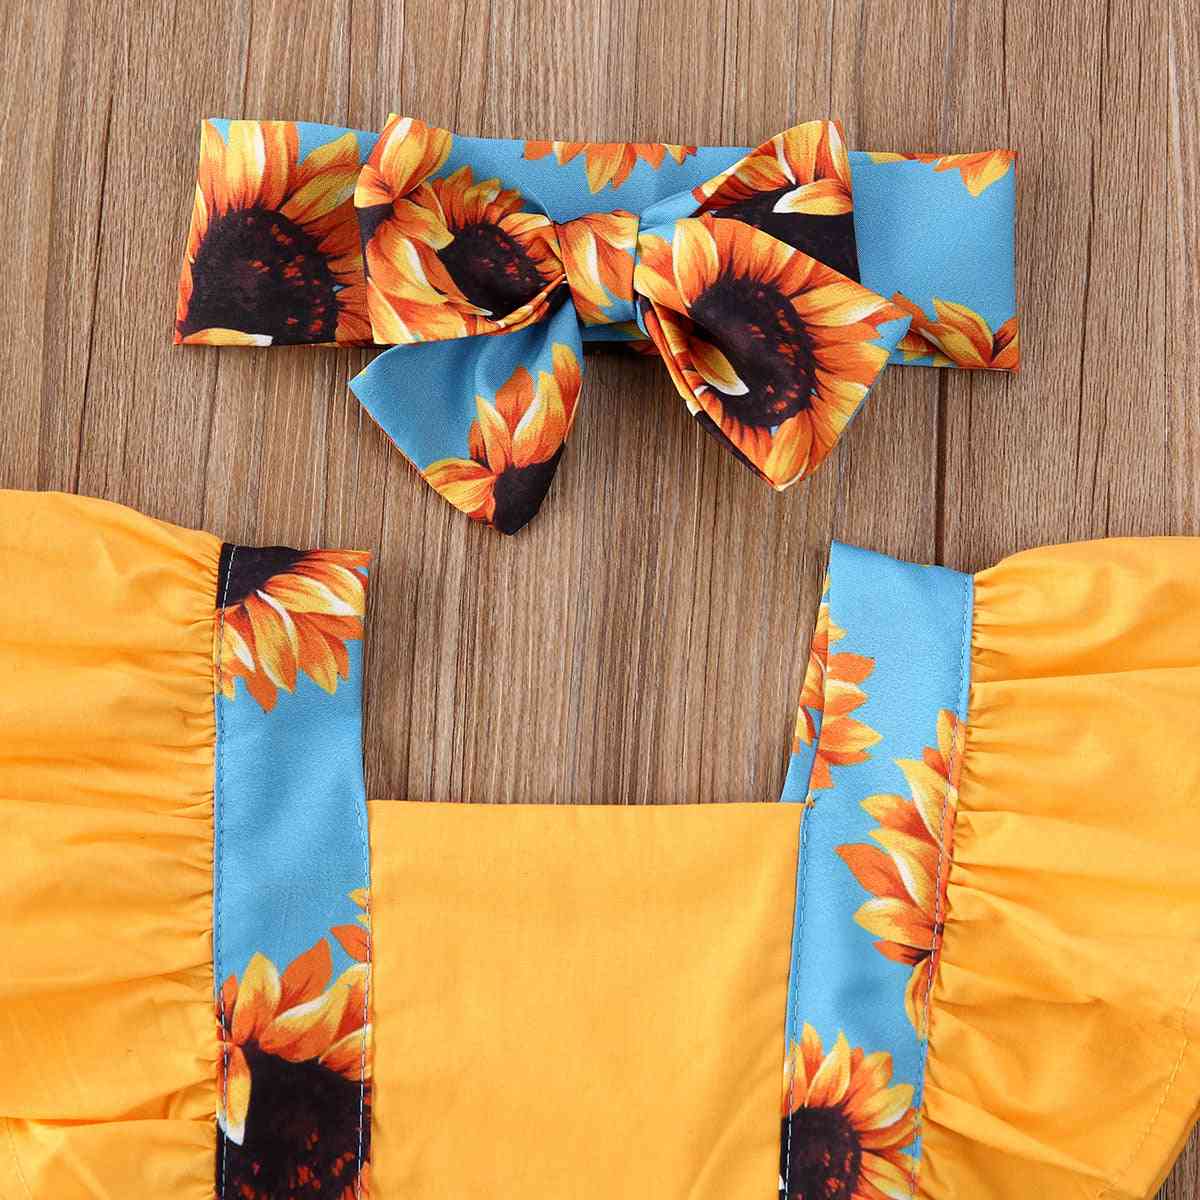 Moda verão recém-nascidos crianças bebês meninas roupas roupas macacão diário flor macacão tiara